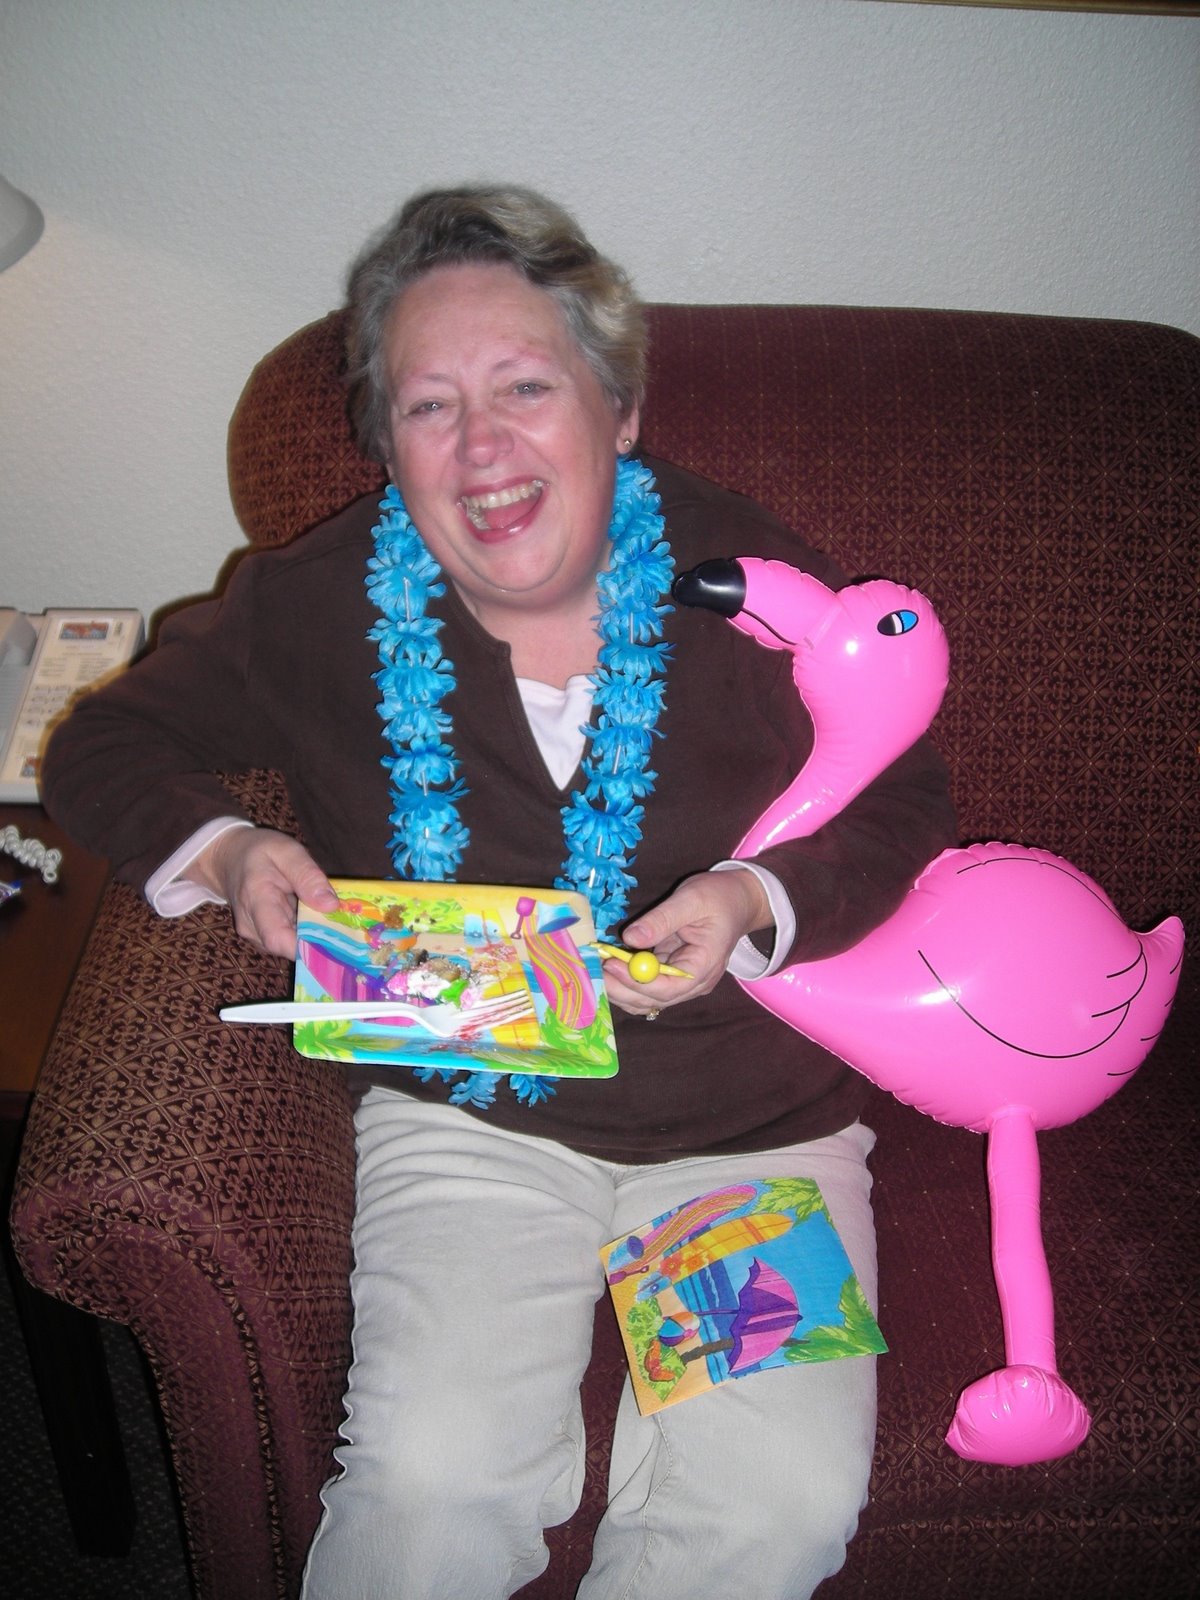 [grandma+and+flamingoJPG.jpg]